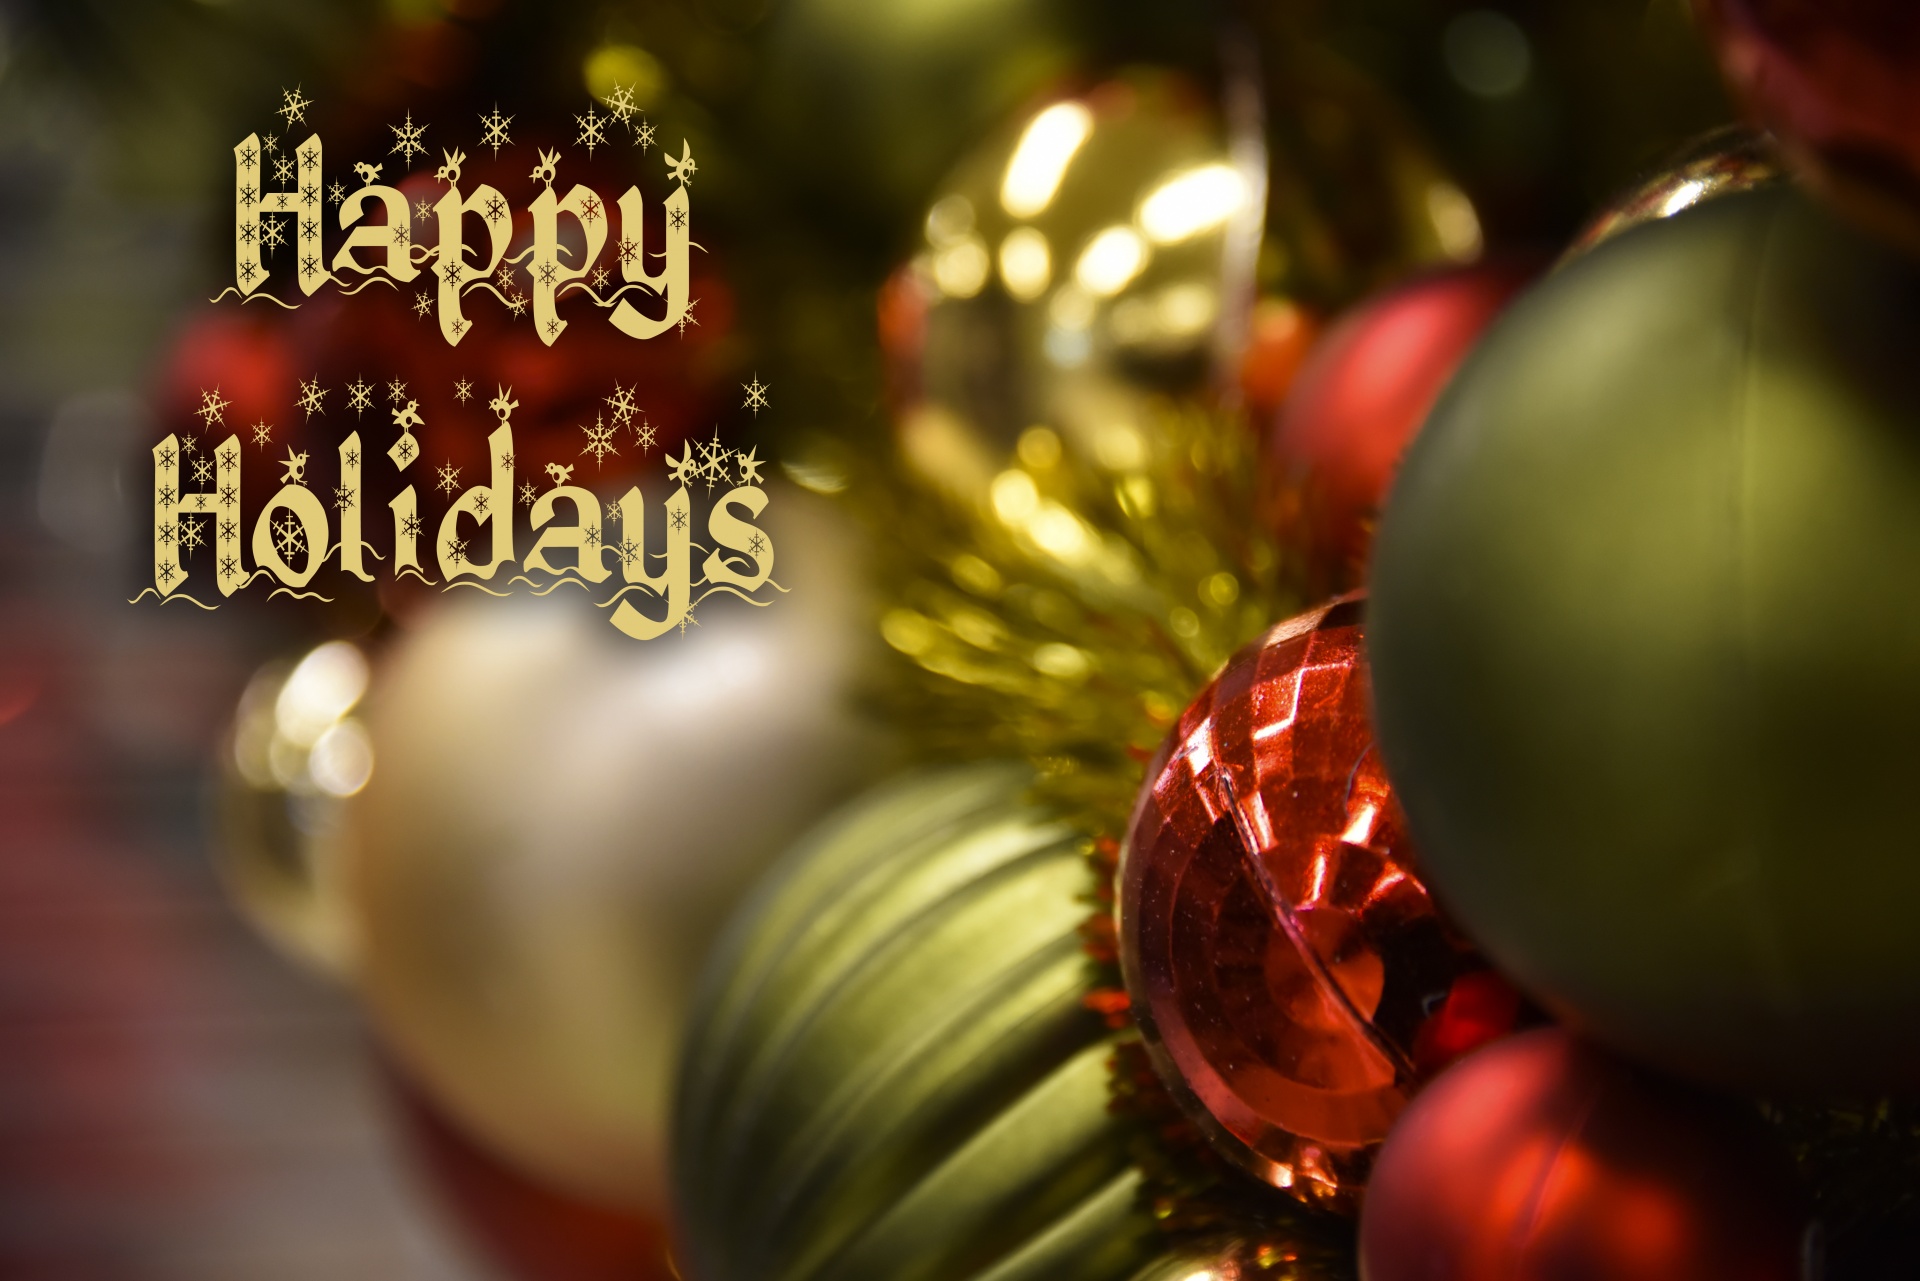 Merry Christmas & Happy Holidays / Joyeux Noël et Joyeuses Fêtes